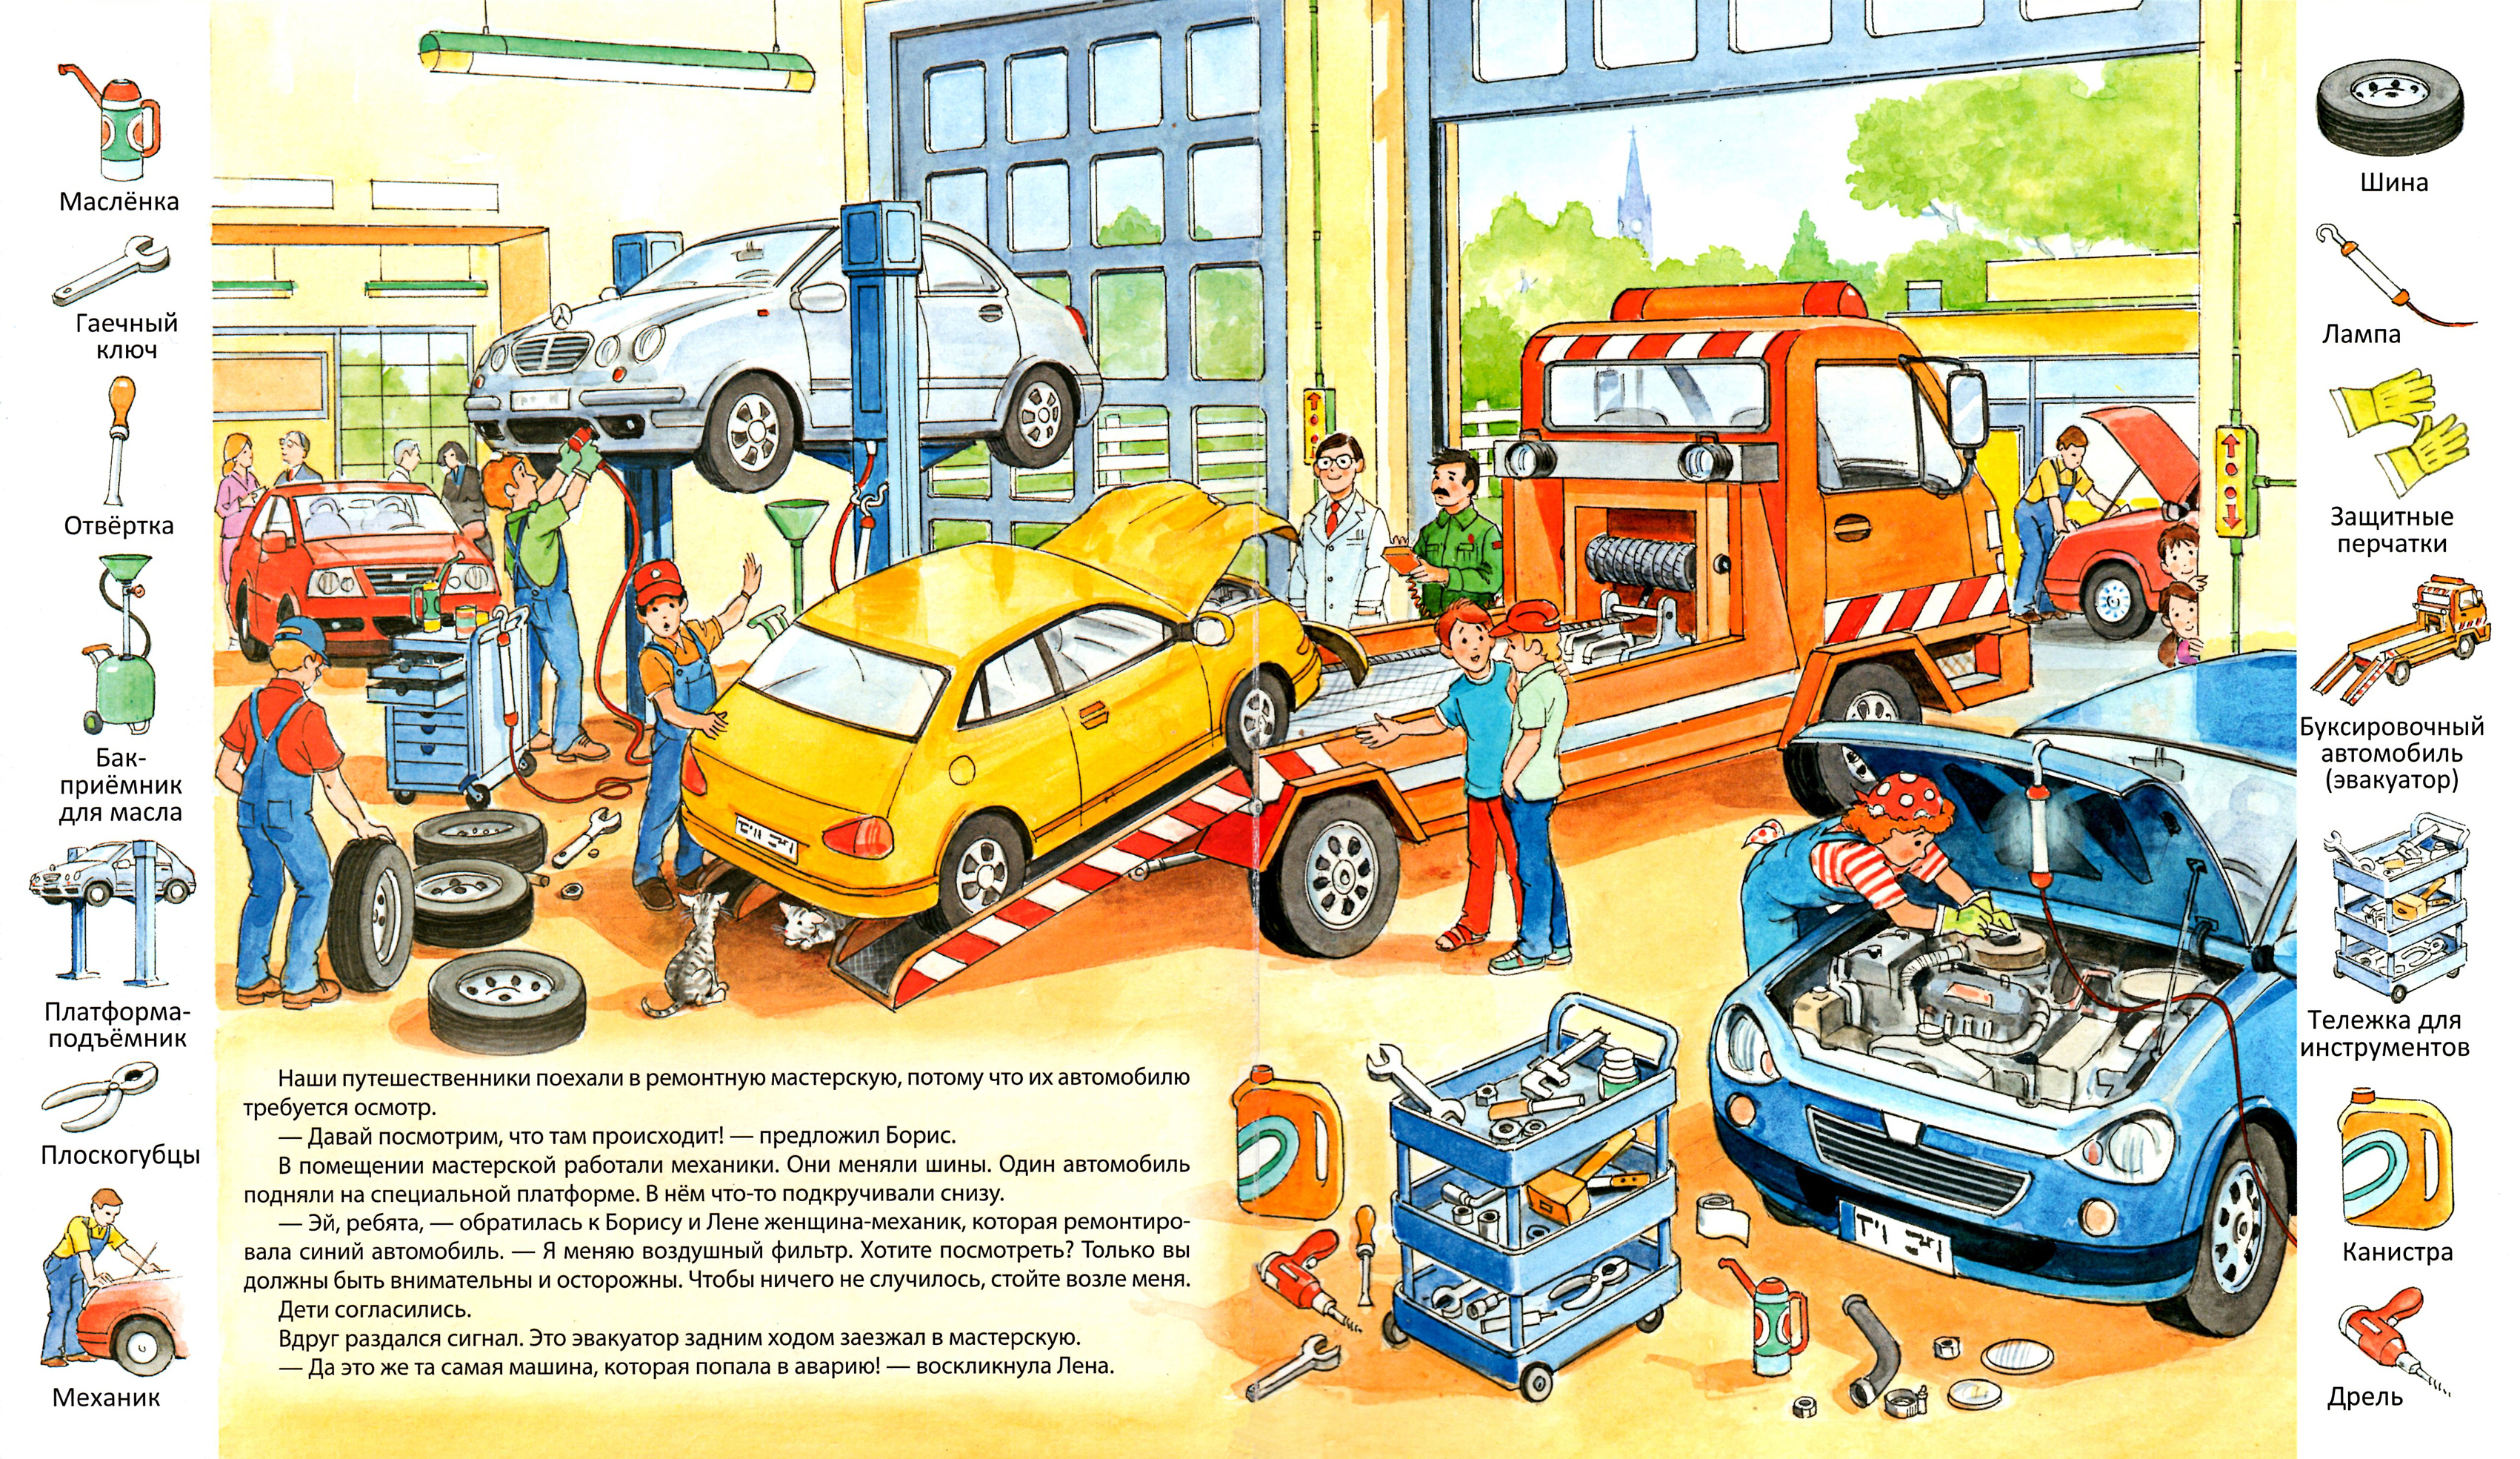 Читать рассказ машина. Детские книжки про машины. Детская книга про машины. Книги про автомобили для детей. Книга про машины для мальчиков.